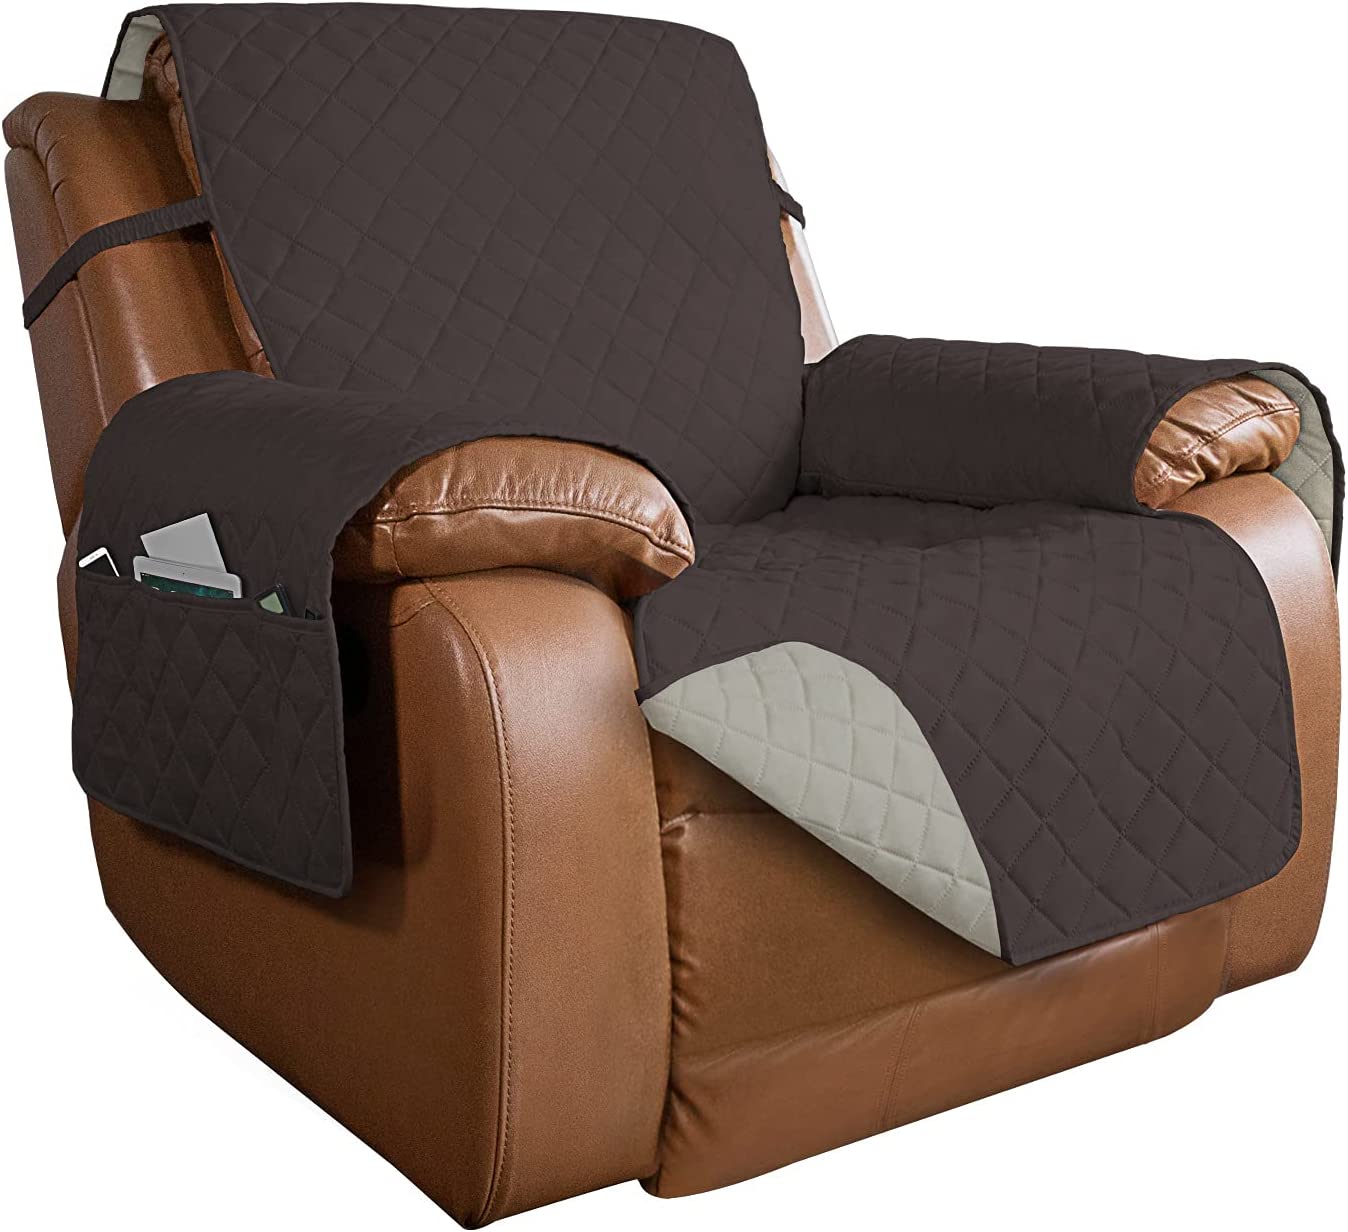 PureFit Reversible Quilted Oversized Recliner Sofa Cover (housse de canapé incliné surdimensionné)